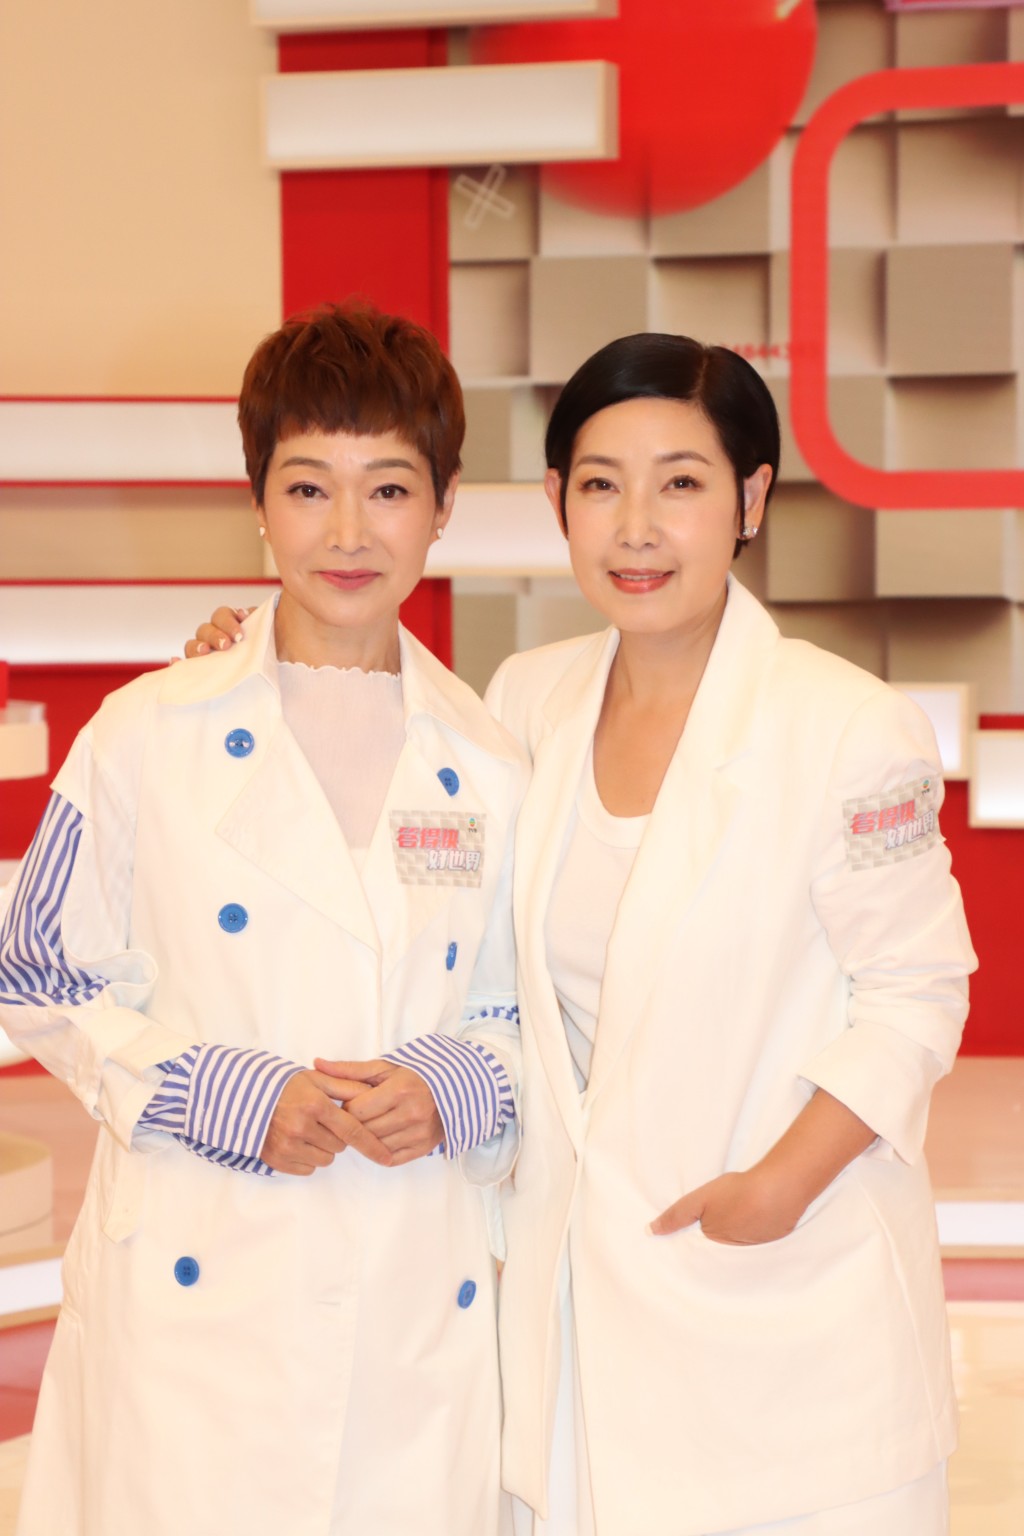 黎芷珊现时仍有作客TVB节目。